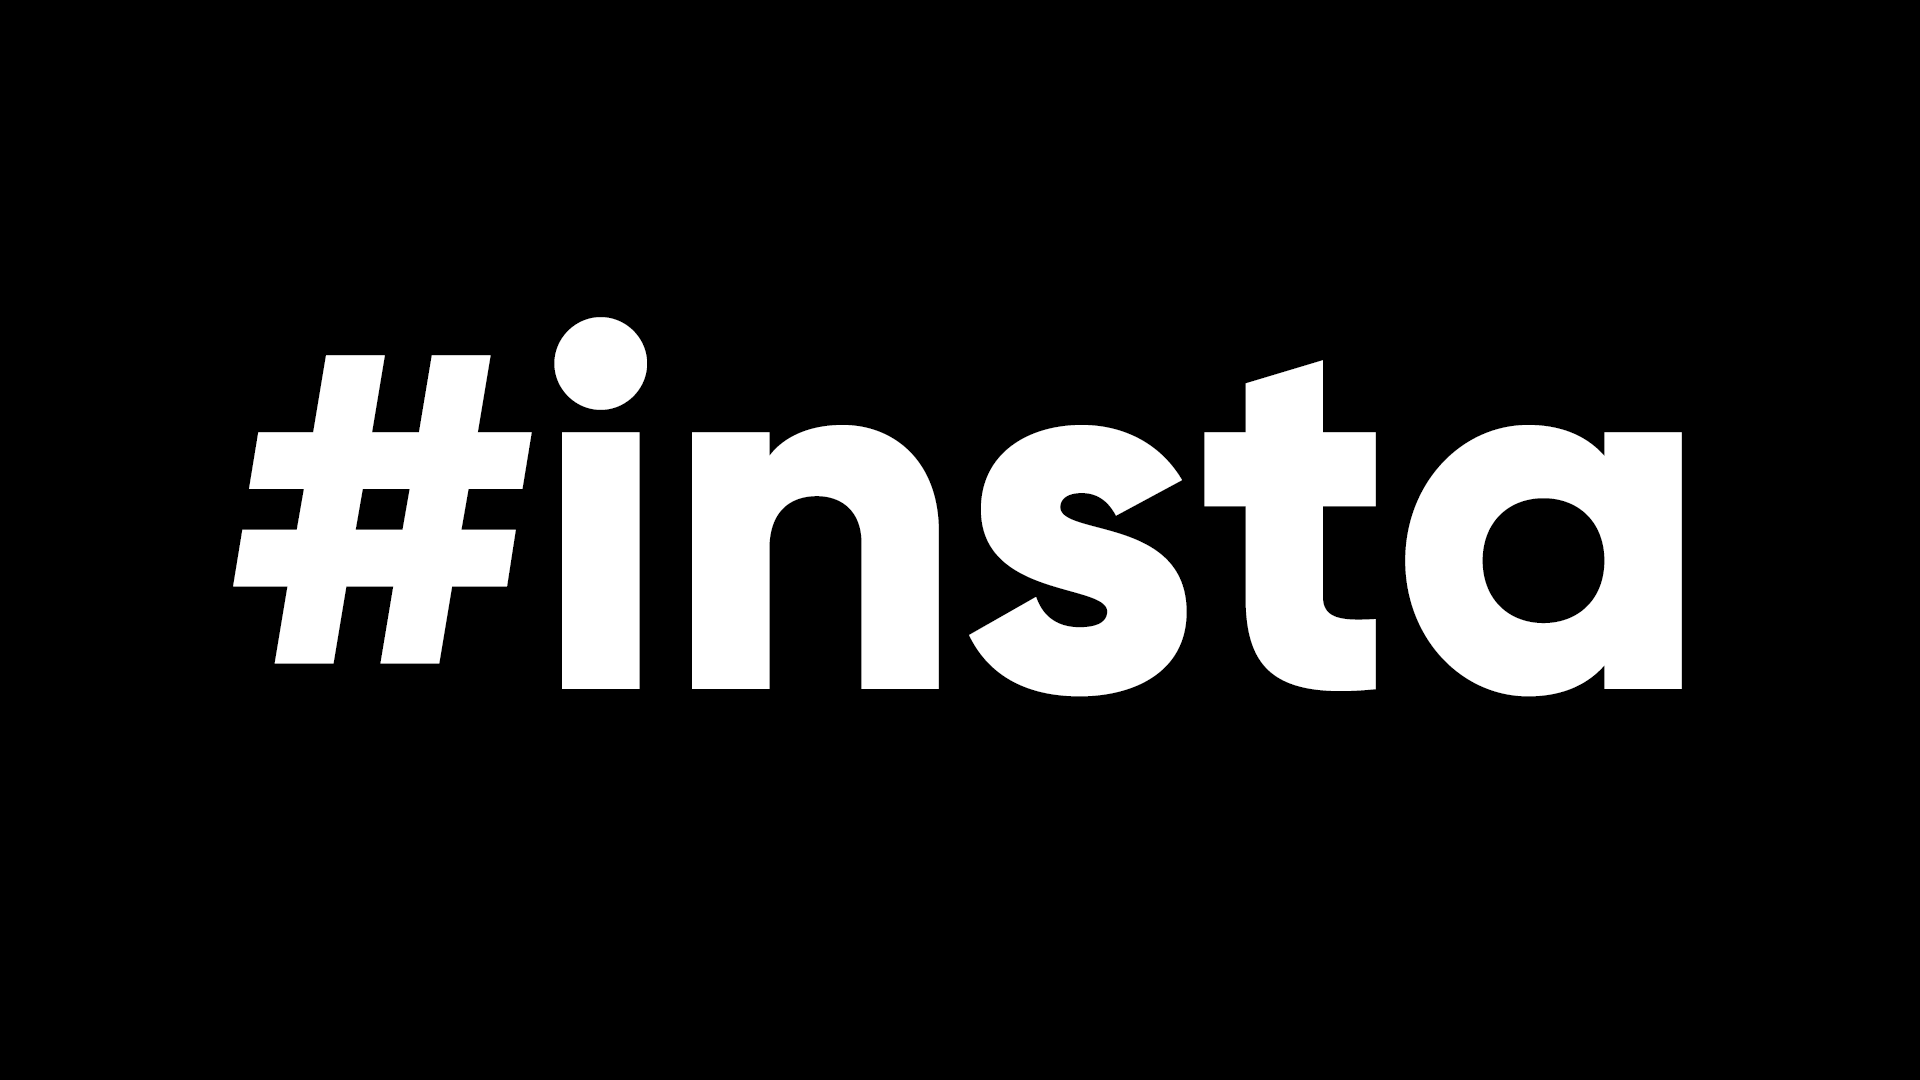 Hashtag Insta